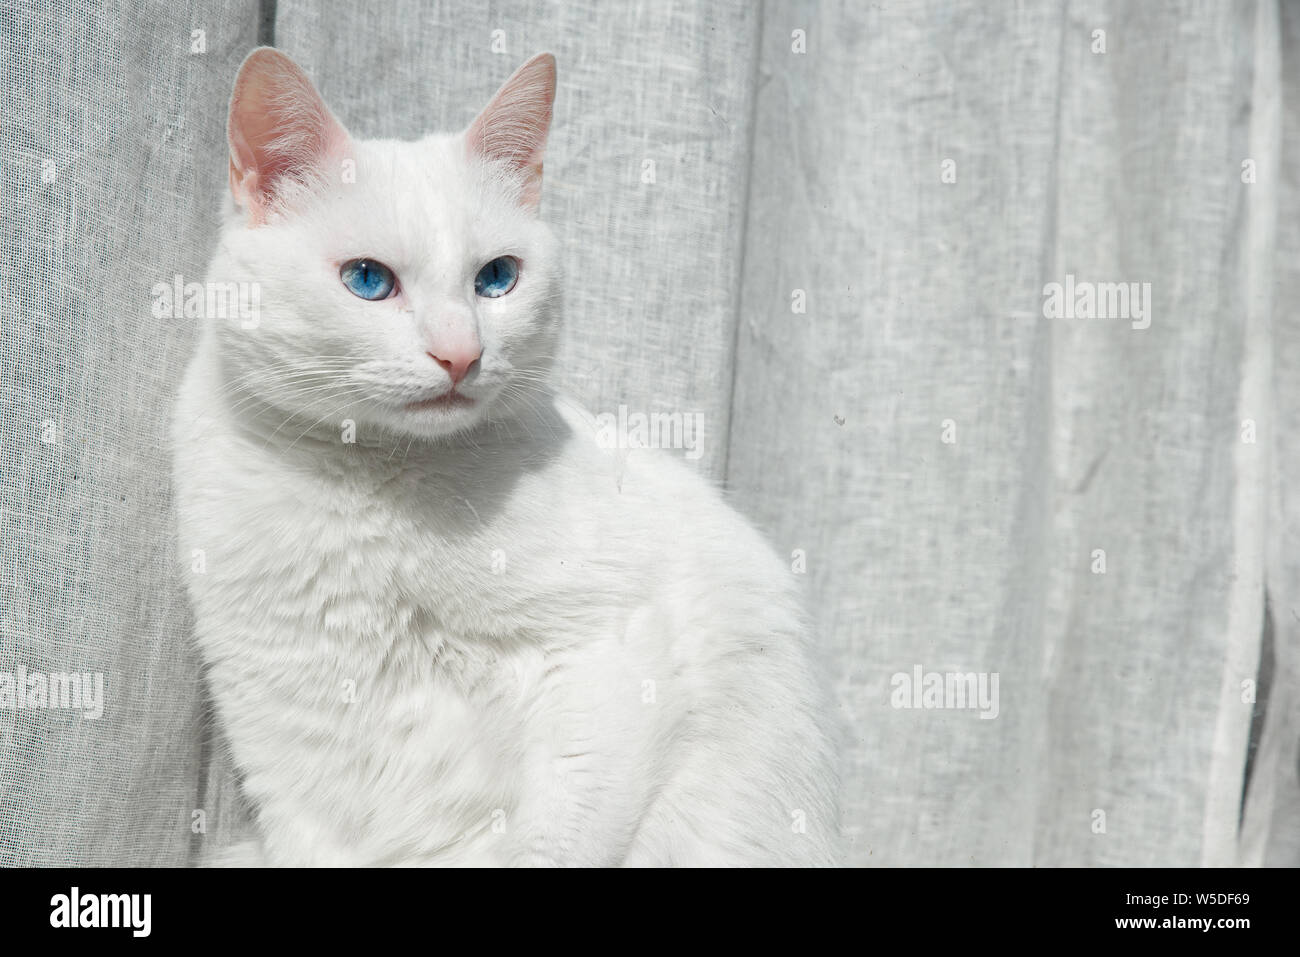 Un chat blanc aux yeux bleus en face de rideau gris Banque D'Images